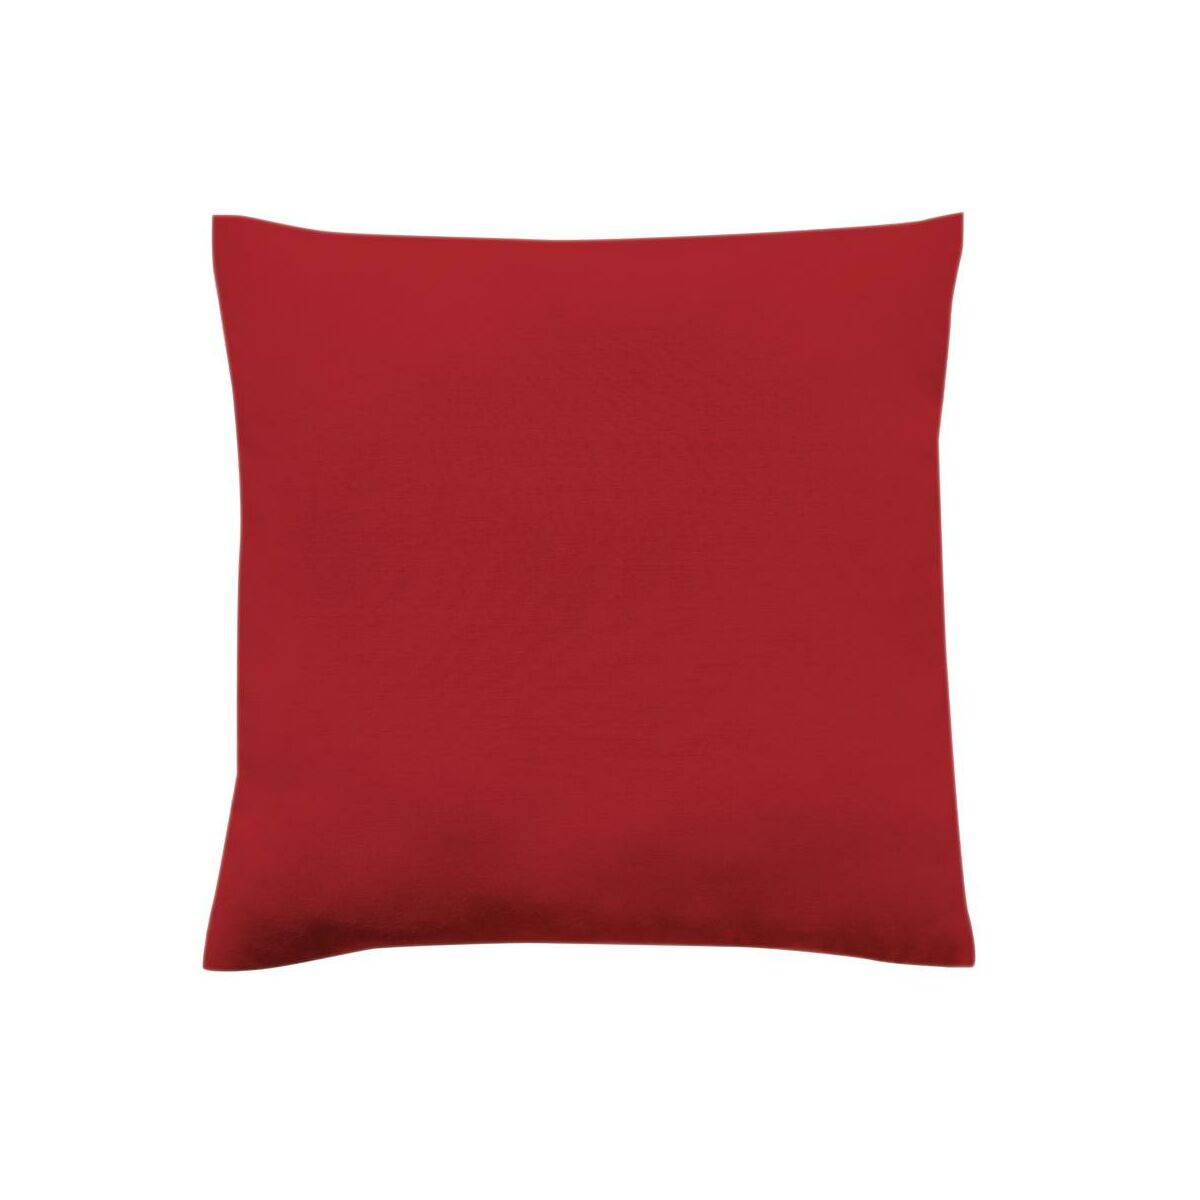 Poduszka Pharell czerwona 45 x 45 cm Inspire